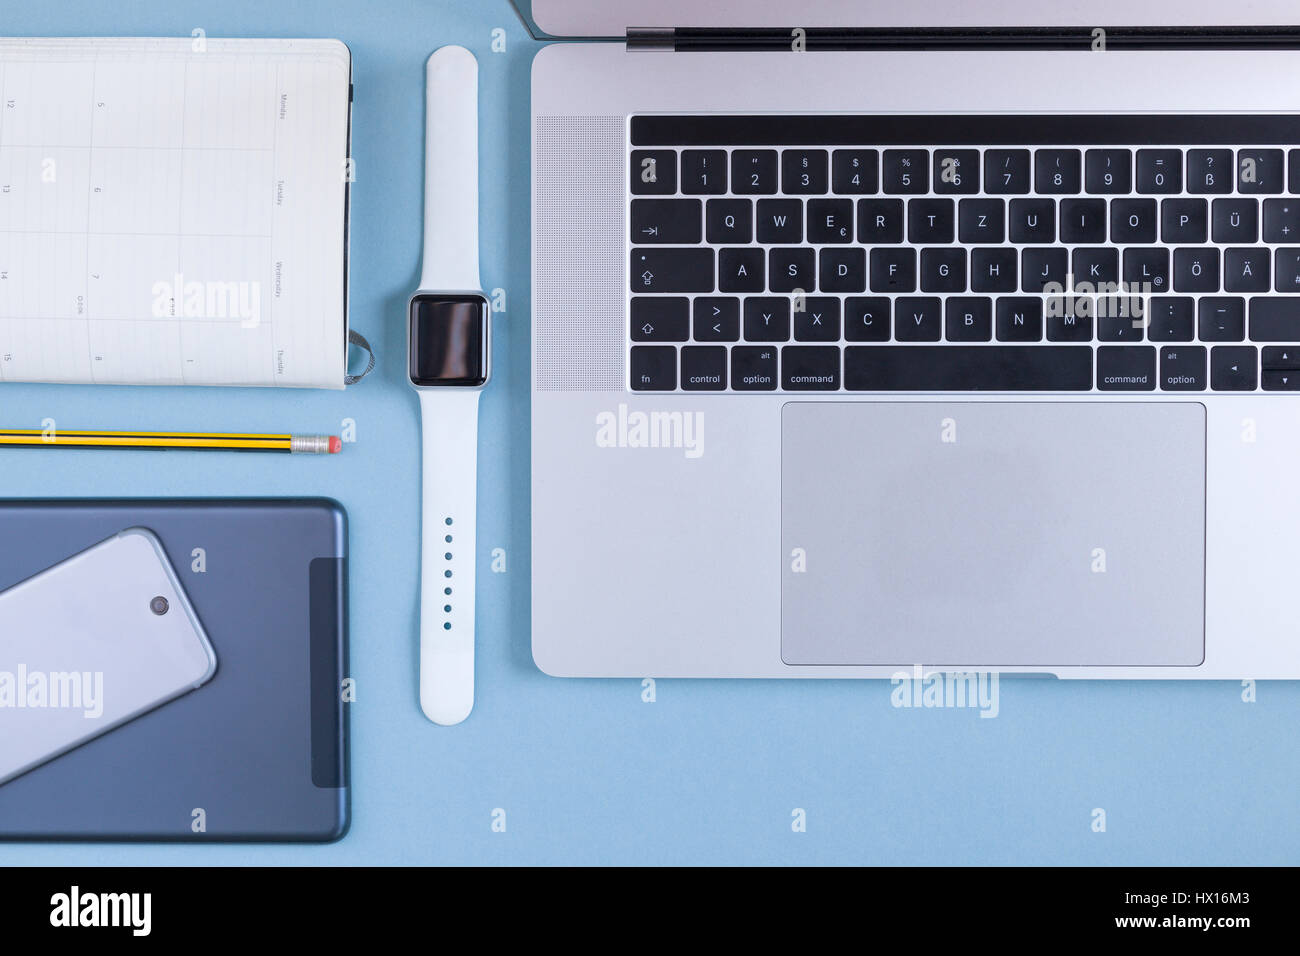 Vari dispositivi elettronici, agenda elettronica personale e una matita sulla massa blu Foto Stock